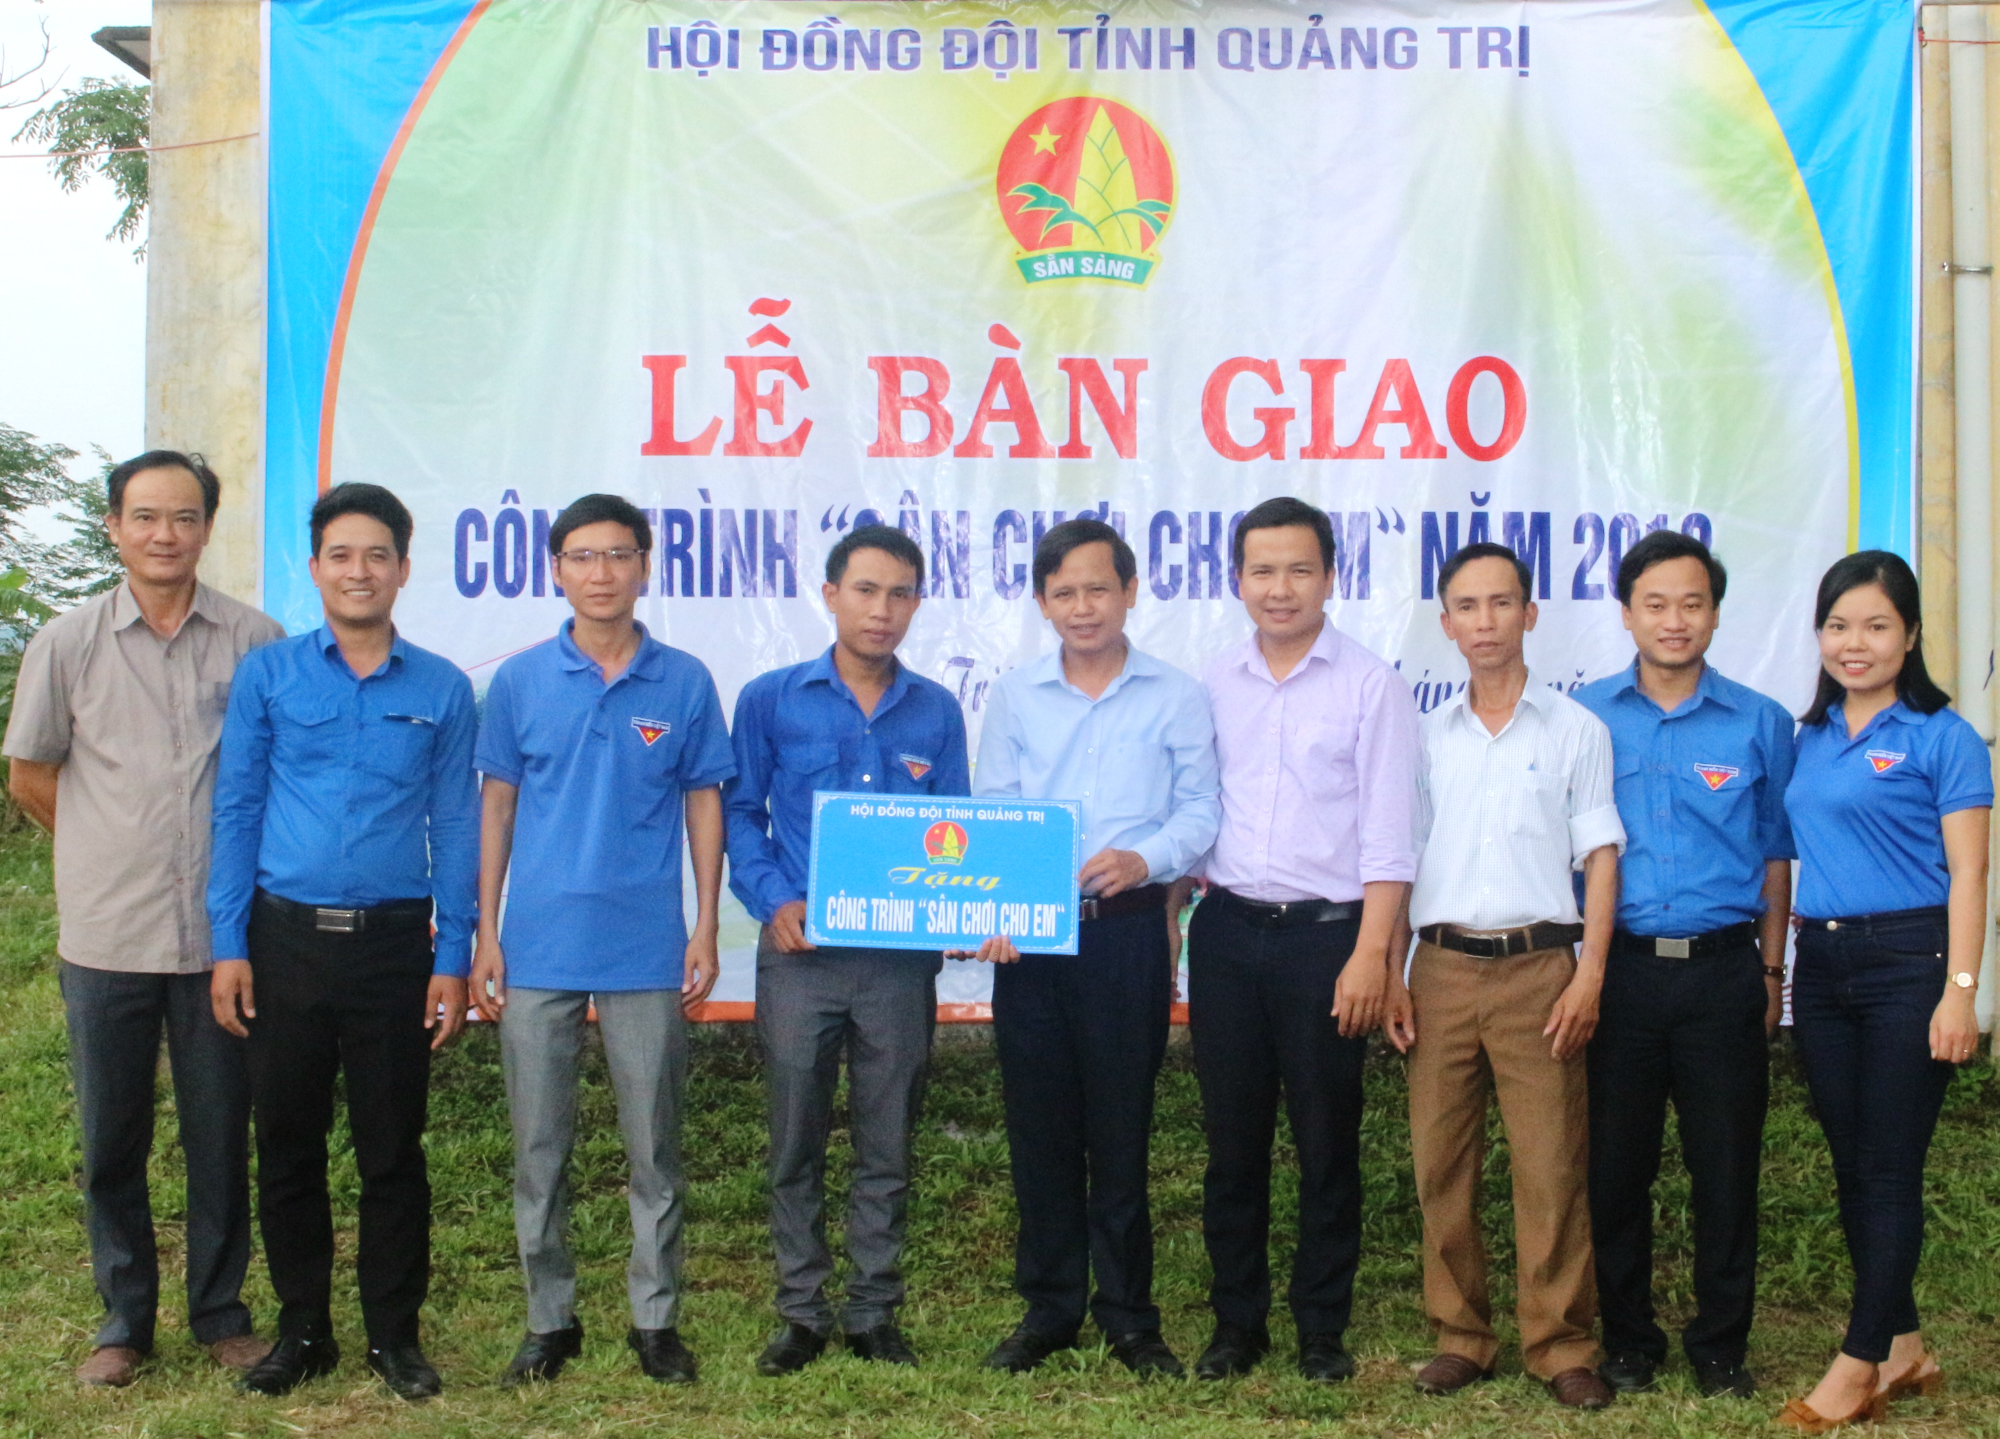  Ảnh 1: Hội đồng Đội tỉnh đã trao biển tượng trưng công trình "Sân chơi cho em" cho đại diện chính quyền, chi bộ thôn Trấm